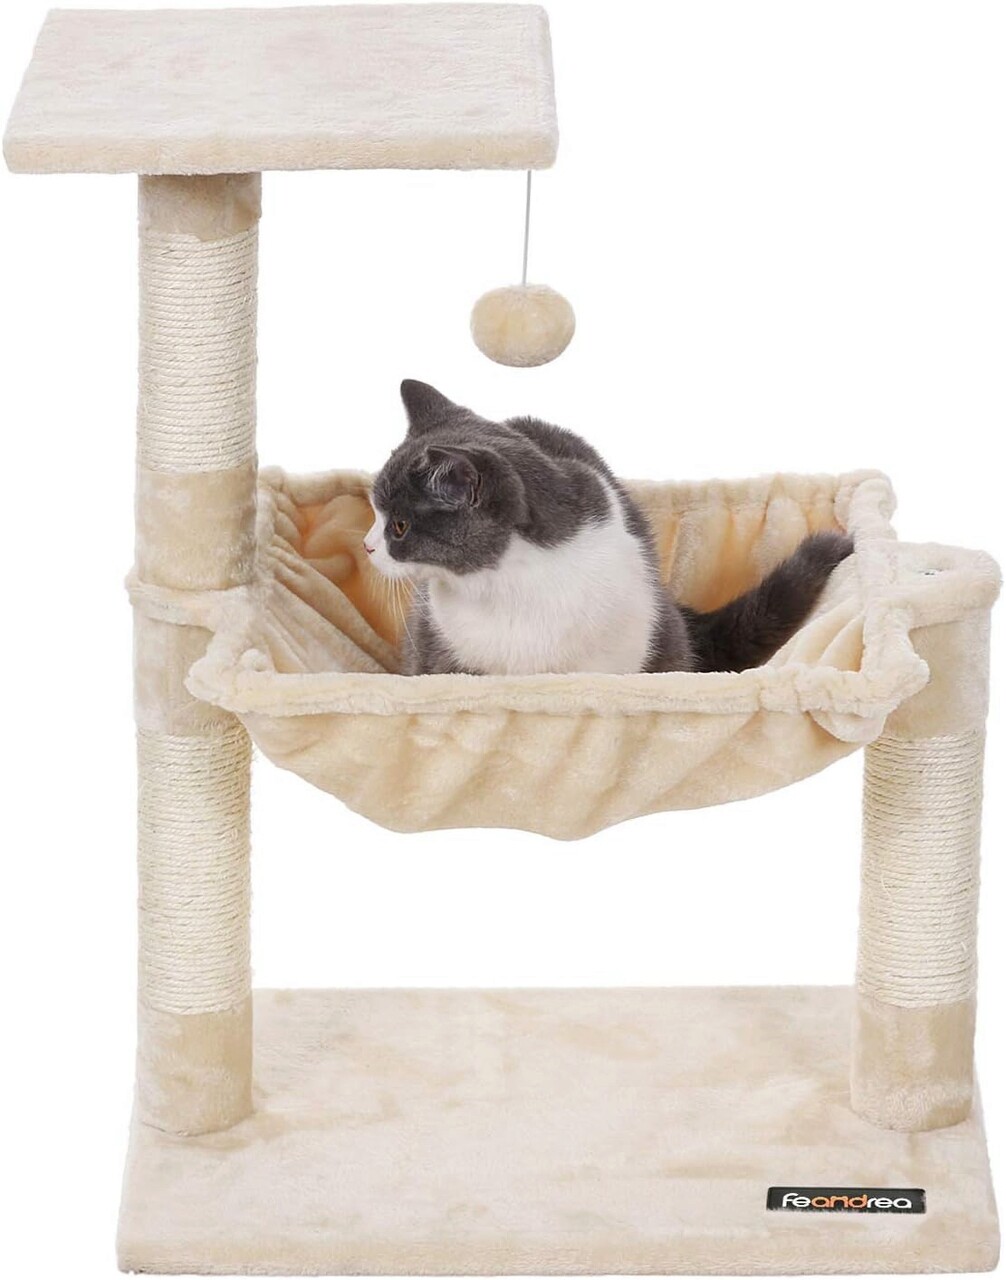 Ansamblu de joaca pisici / arbore pentru pisici, Feandrea, max 7 kg, 50x36x70 cm, PAL/catifea/sisal, bej